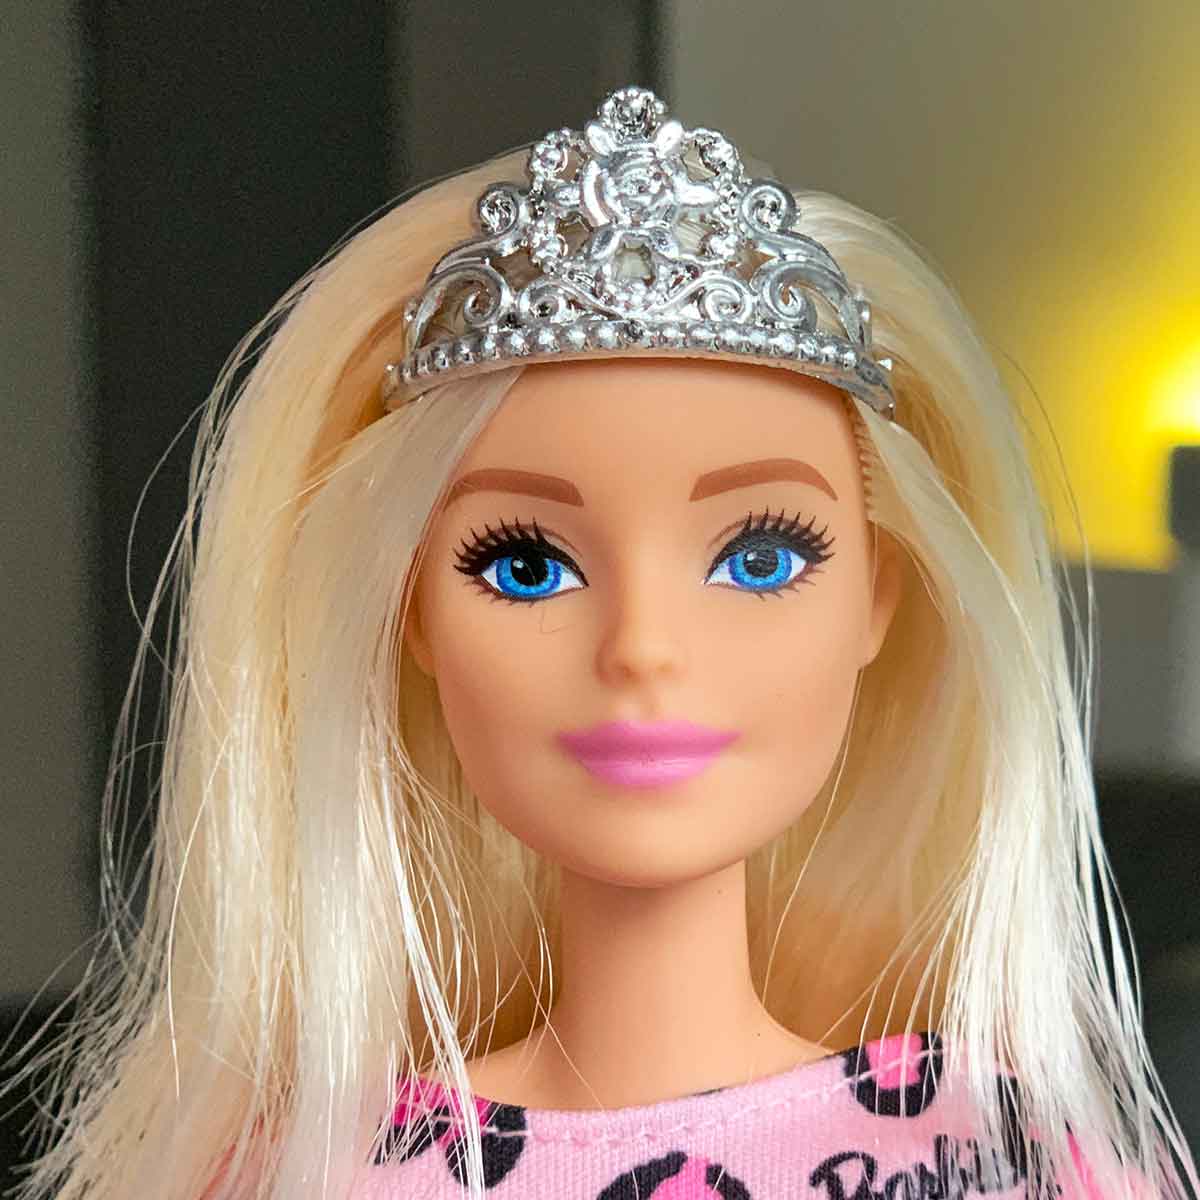 Barbie prinsessenkroon zilver met sierlijke lijnen en bloem